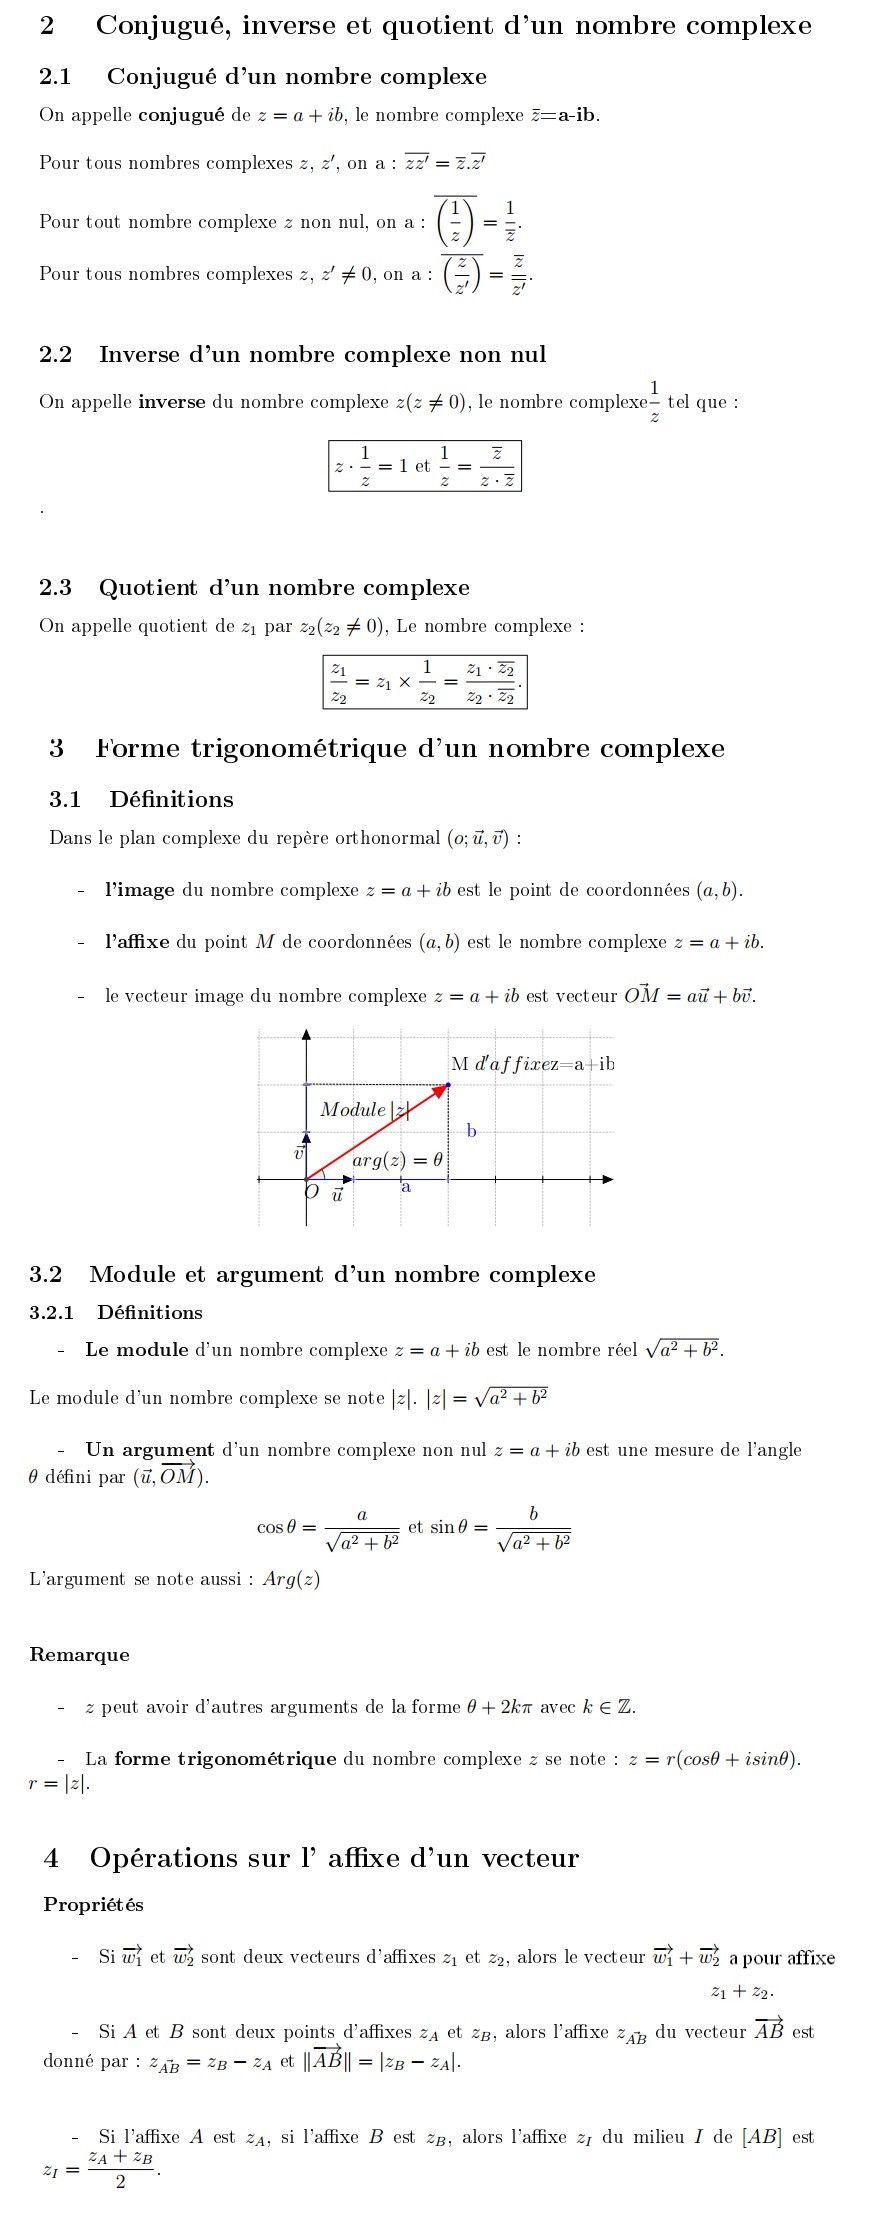 Conjugué-inverse-quotient-forme-trigo-dun-nombre-complexe